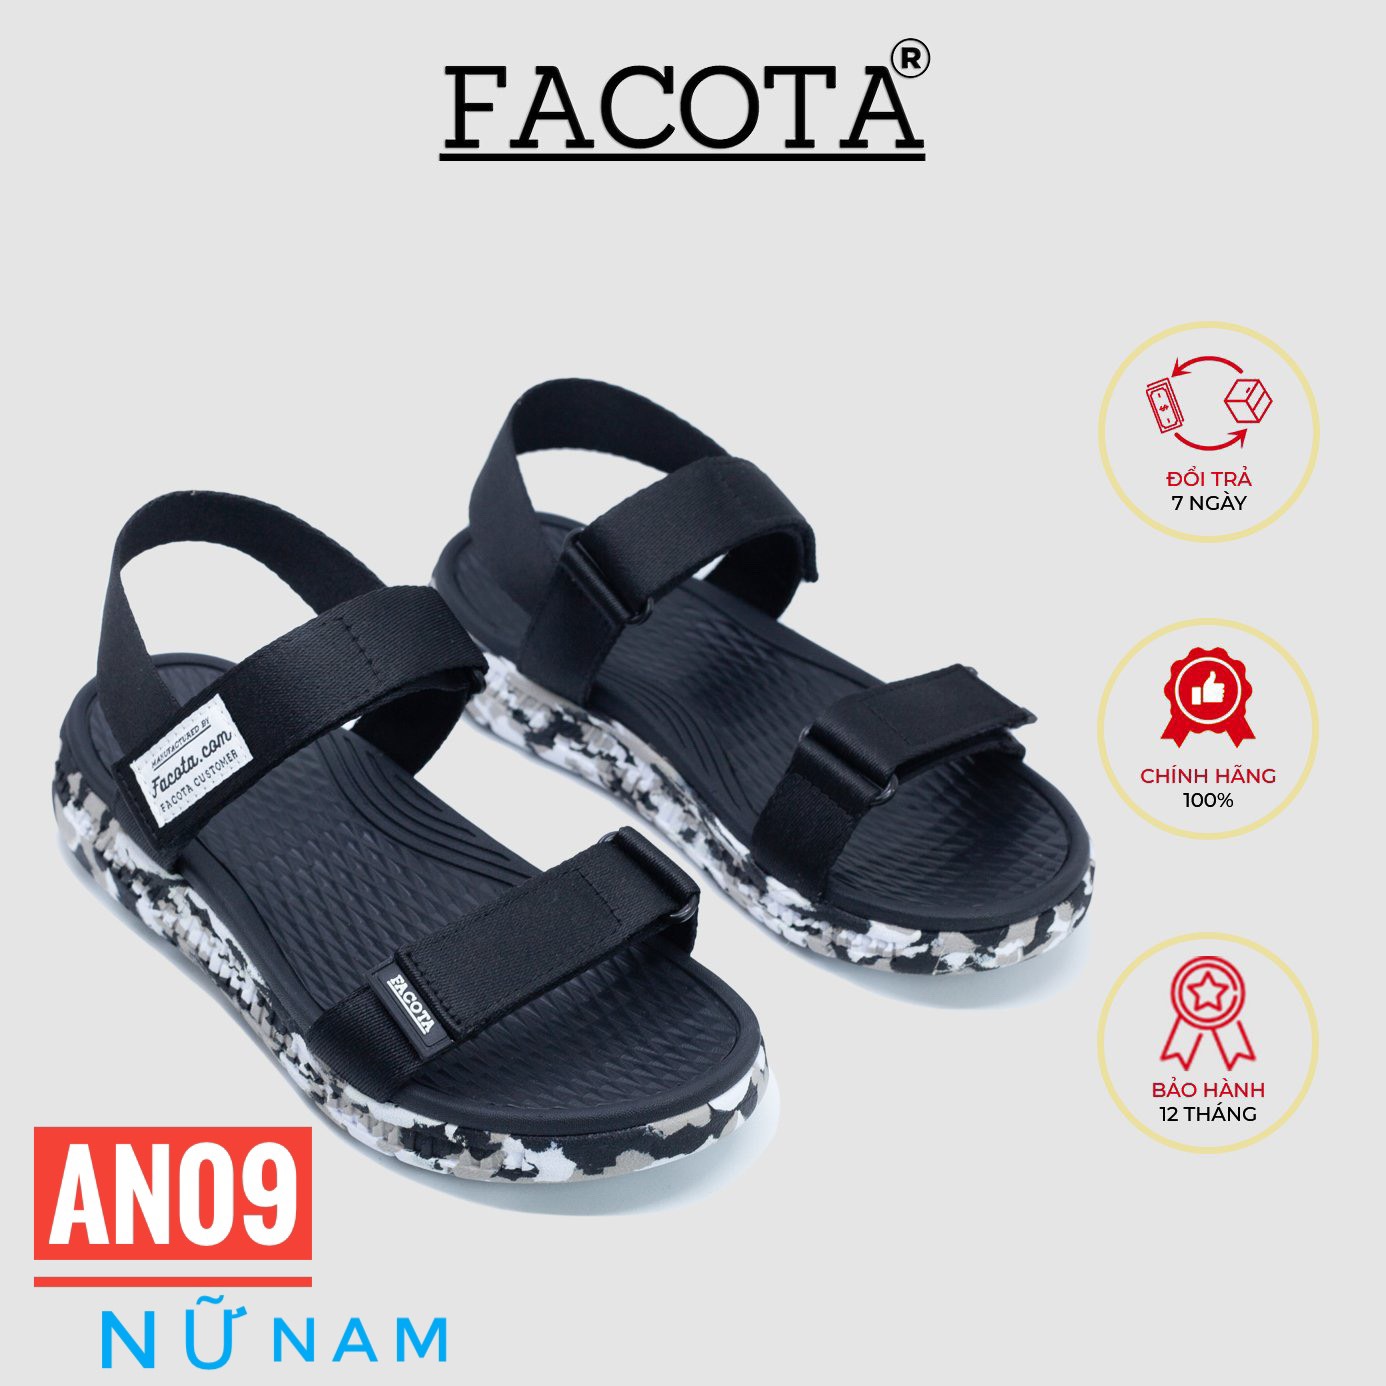 Giày sandal nữ Facota Angelica AN09 sandal học sinh Nữ , Nam quai dù